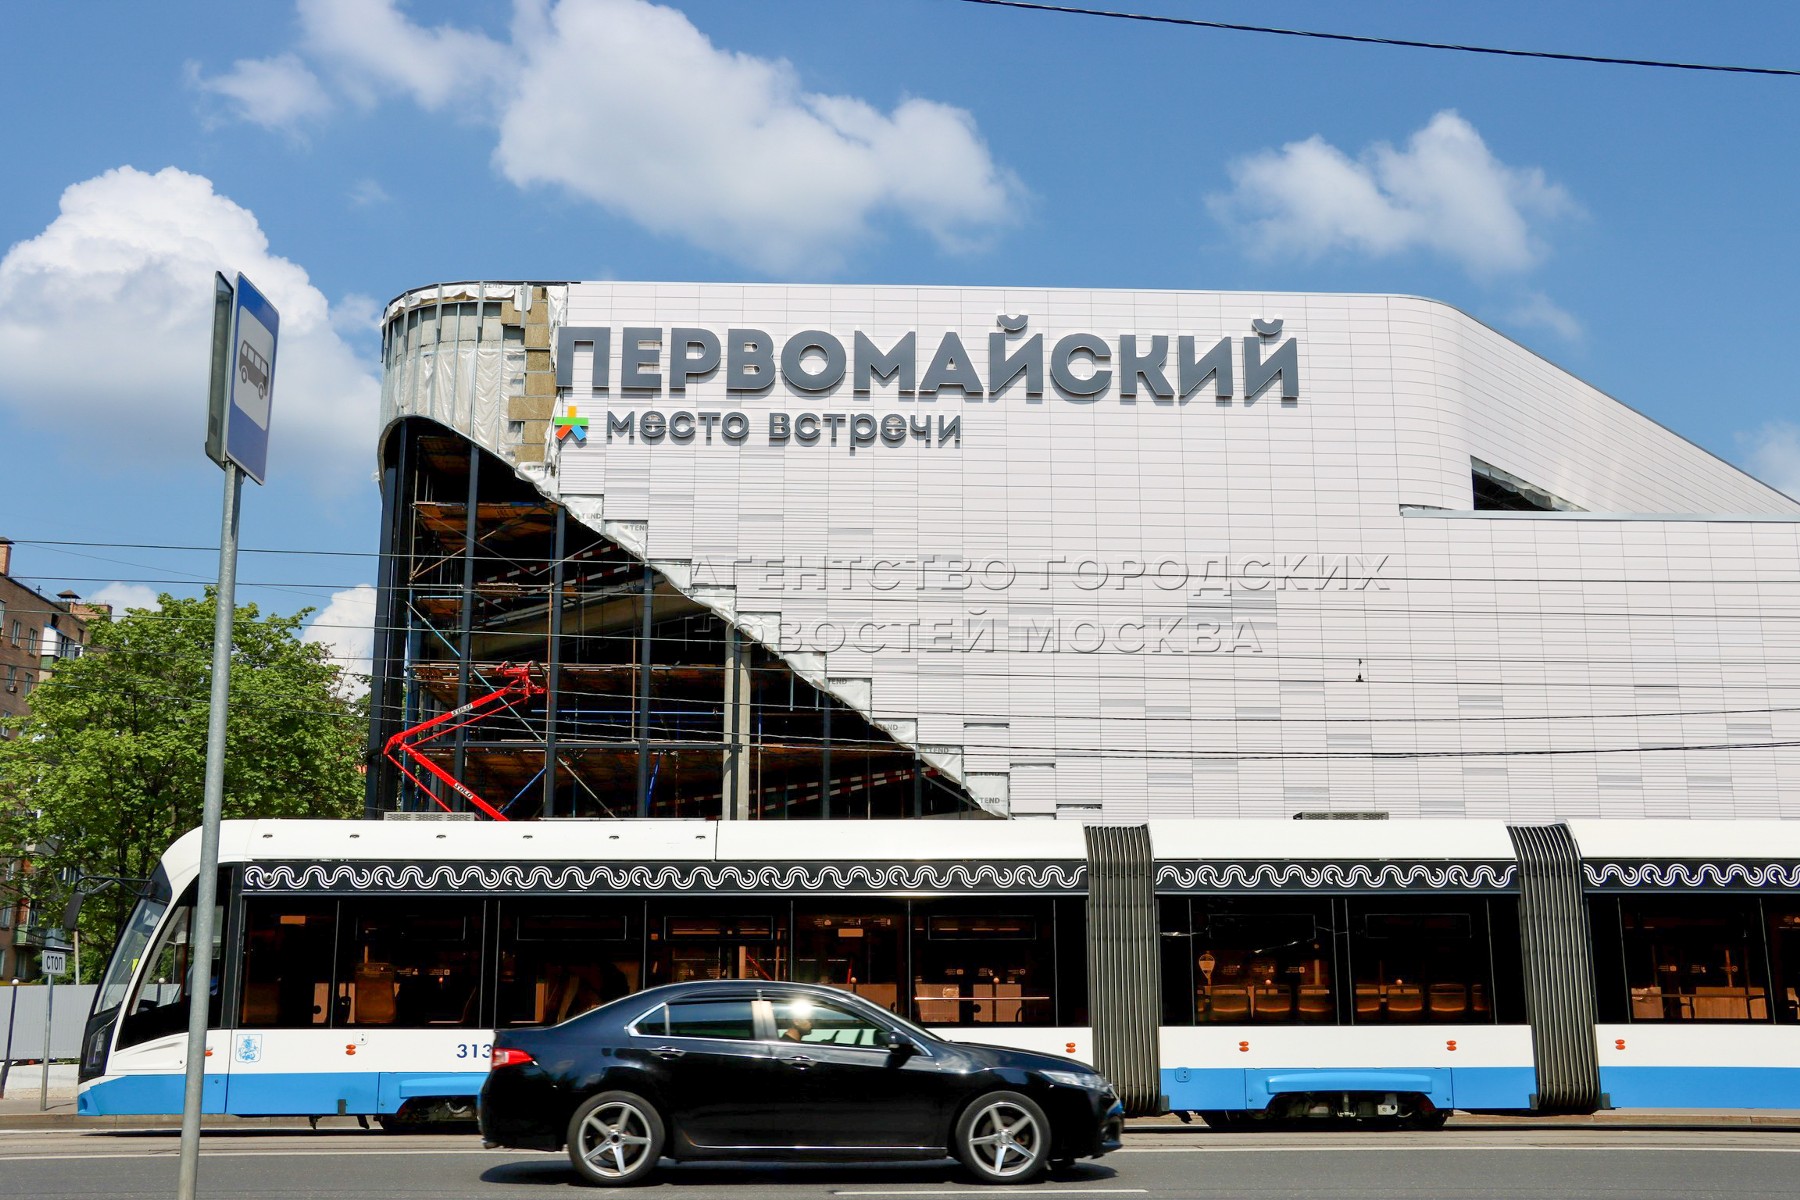 кинотеатр первомайский в москве